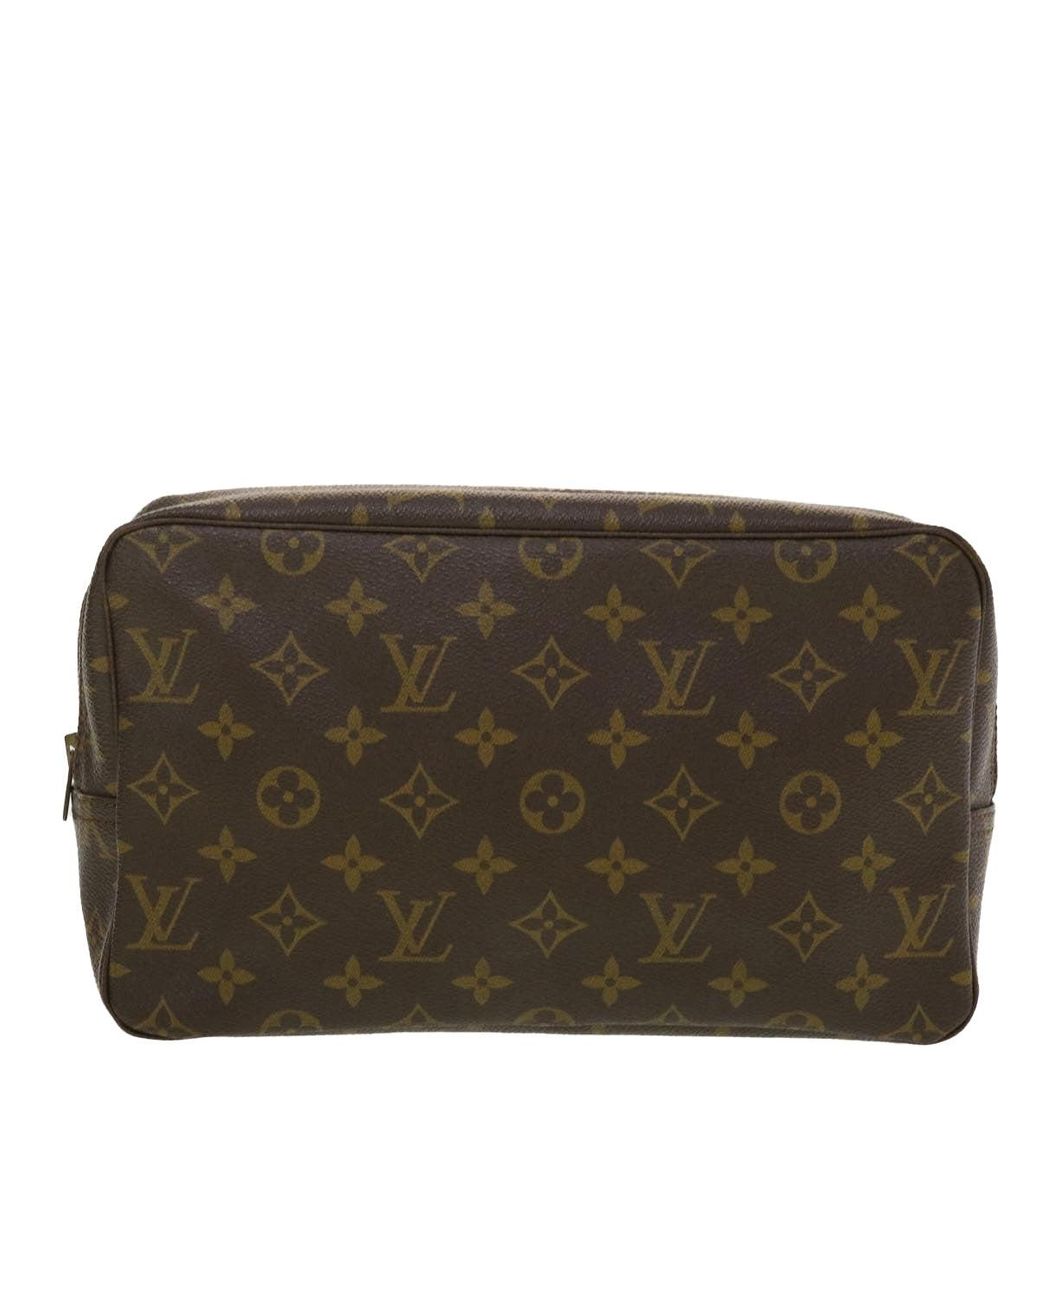 Louis Vuitton Trousse de Toilette Brown Canvas Handbag (Pre-Owned)